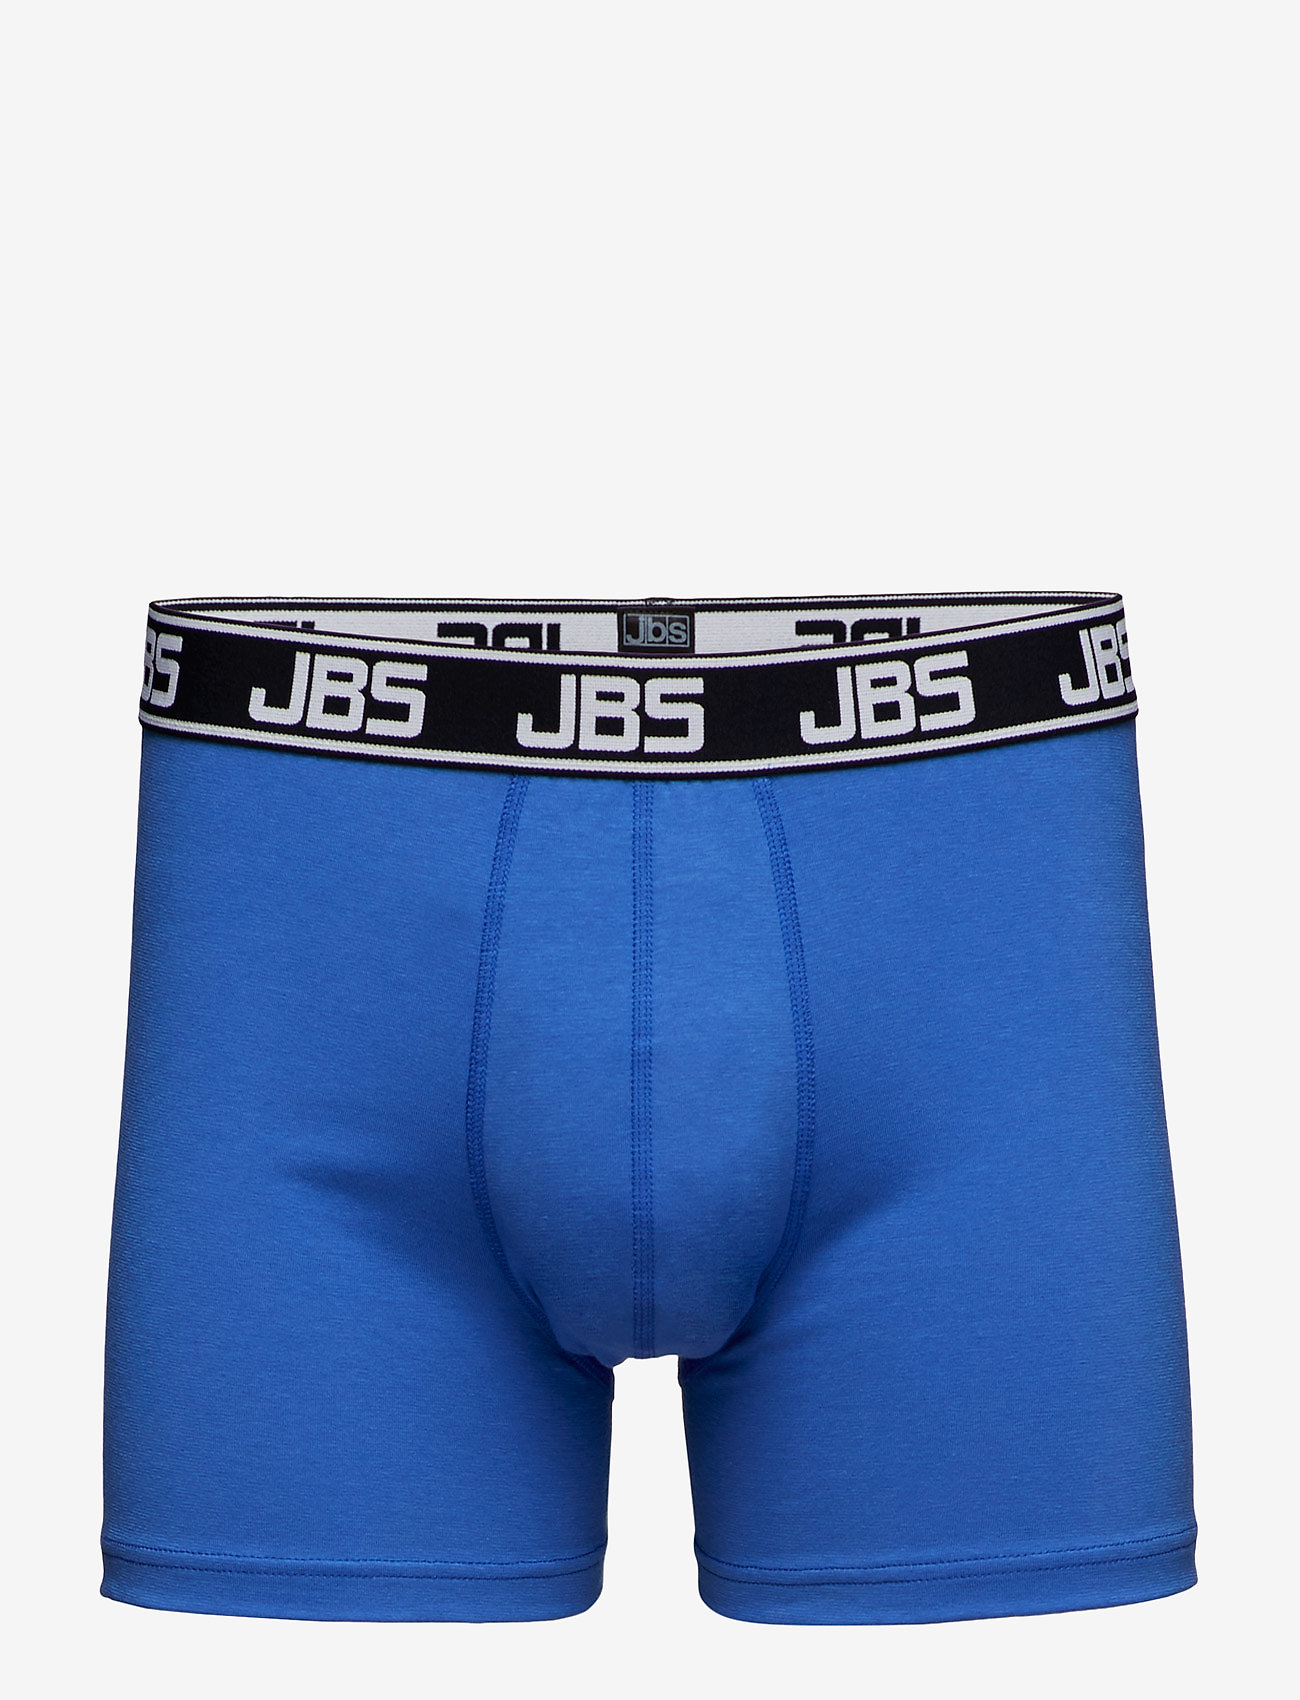 JBS - Boxer - boxer briefs - blue - 0